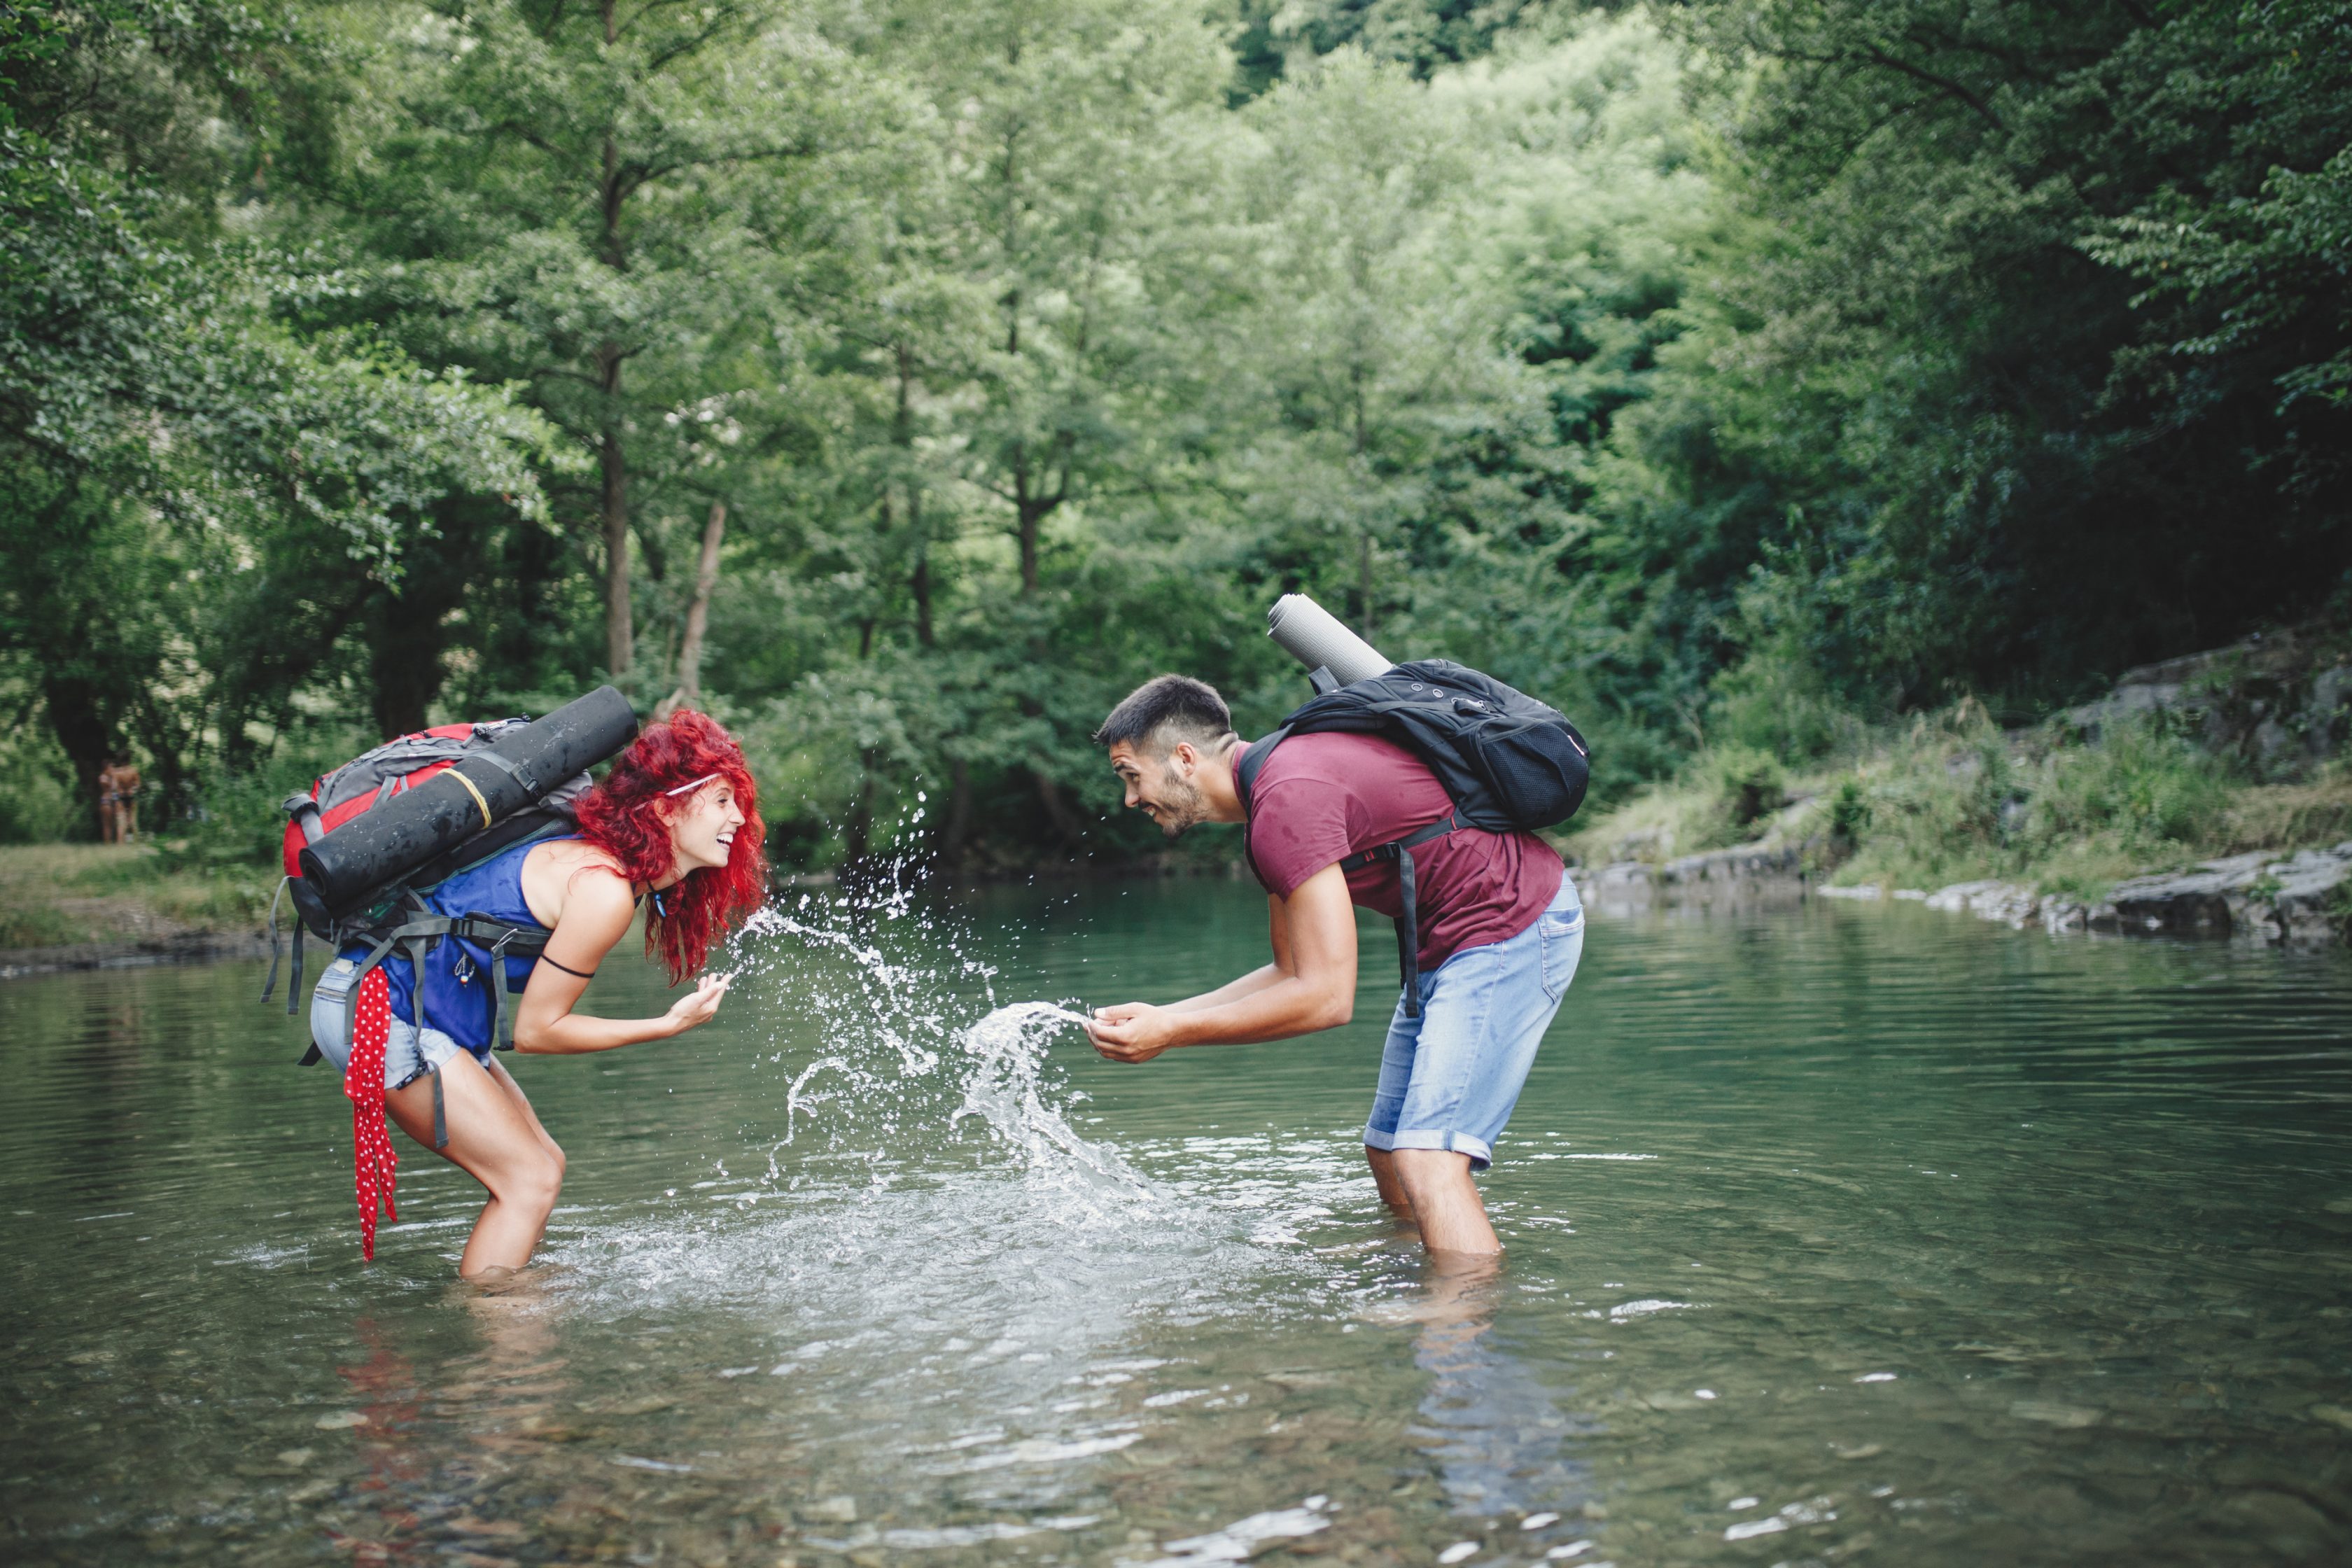 Άντρας και γυναίκα παίζουν με το νερό μέσα στη λίμνη σε ένα δάσος 